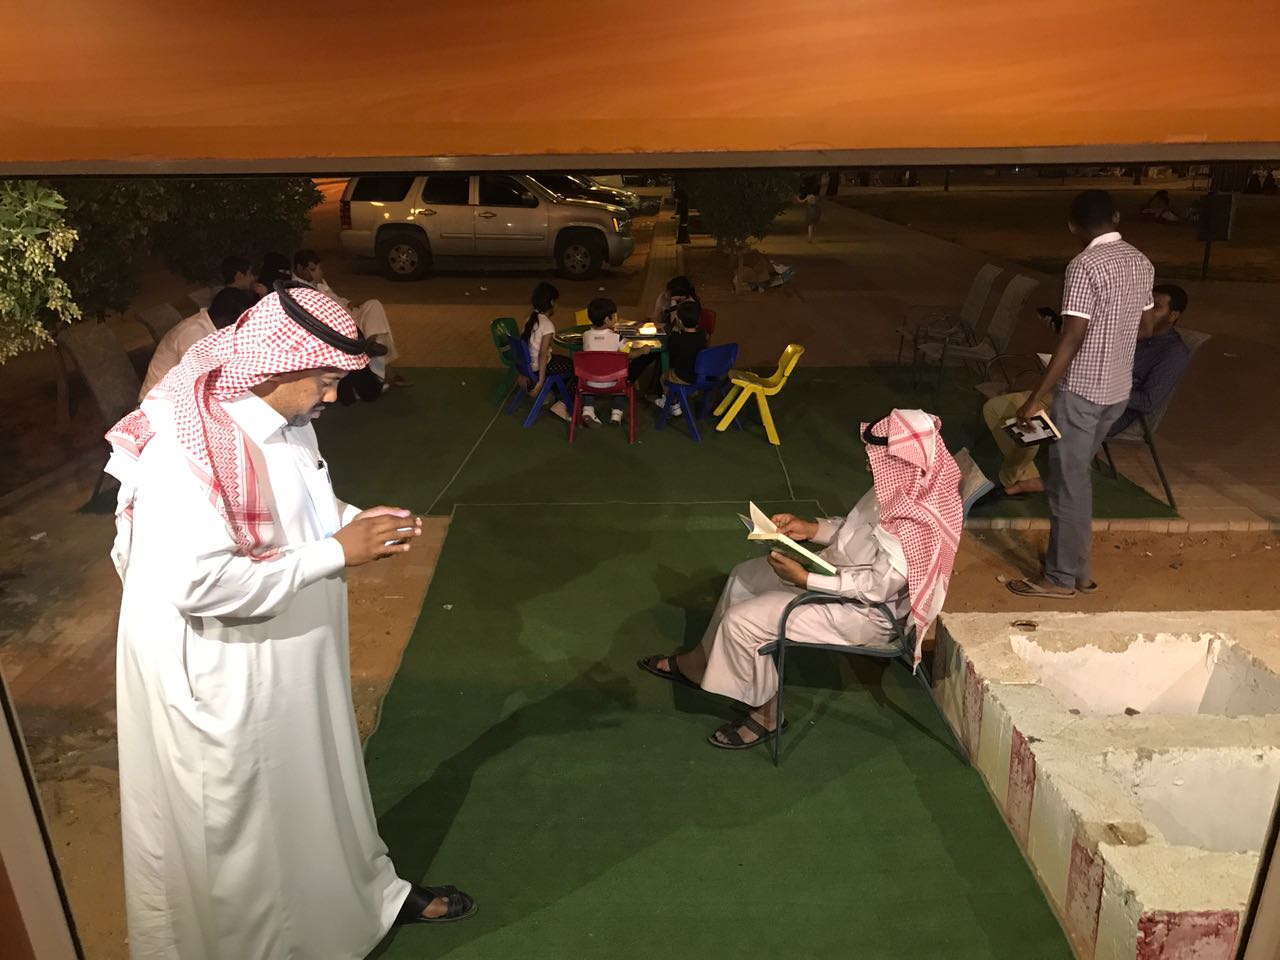 بالصور.. حافلة كتب متنقلة تجوب شوارع الرياض